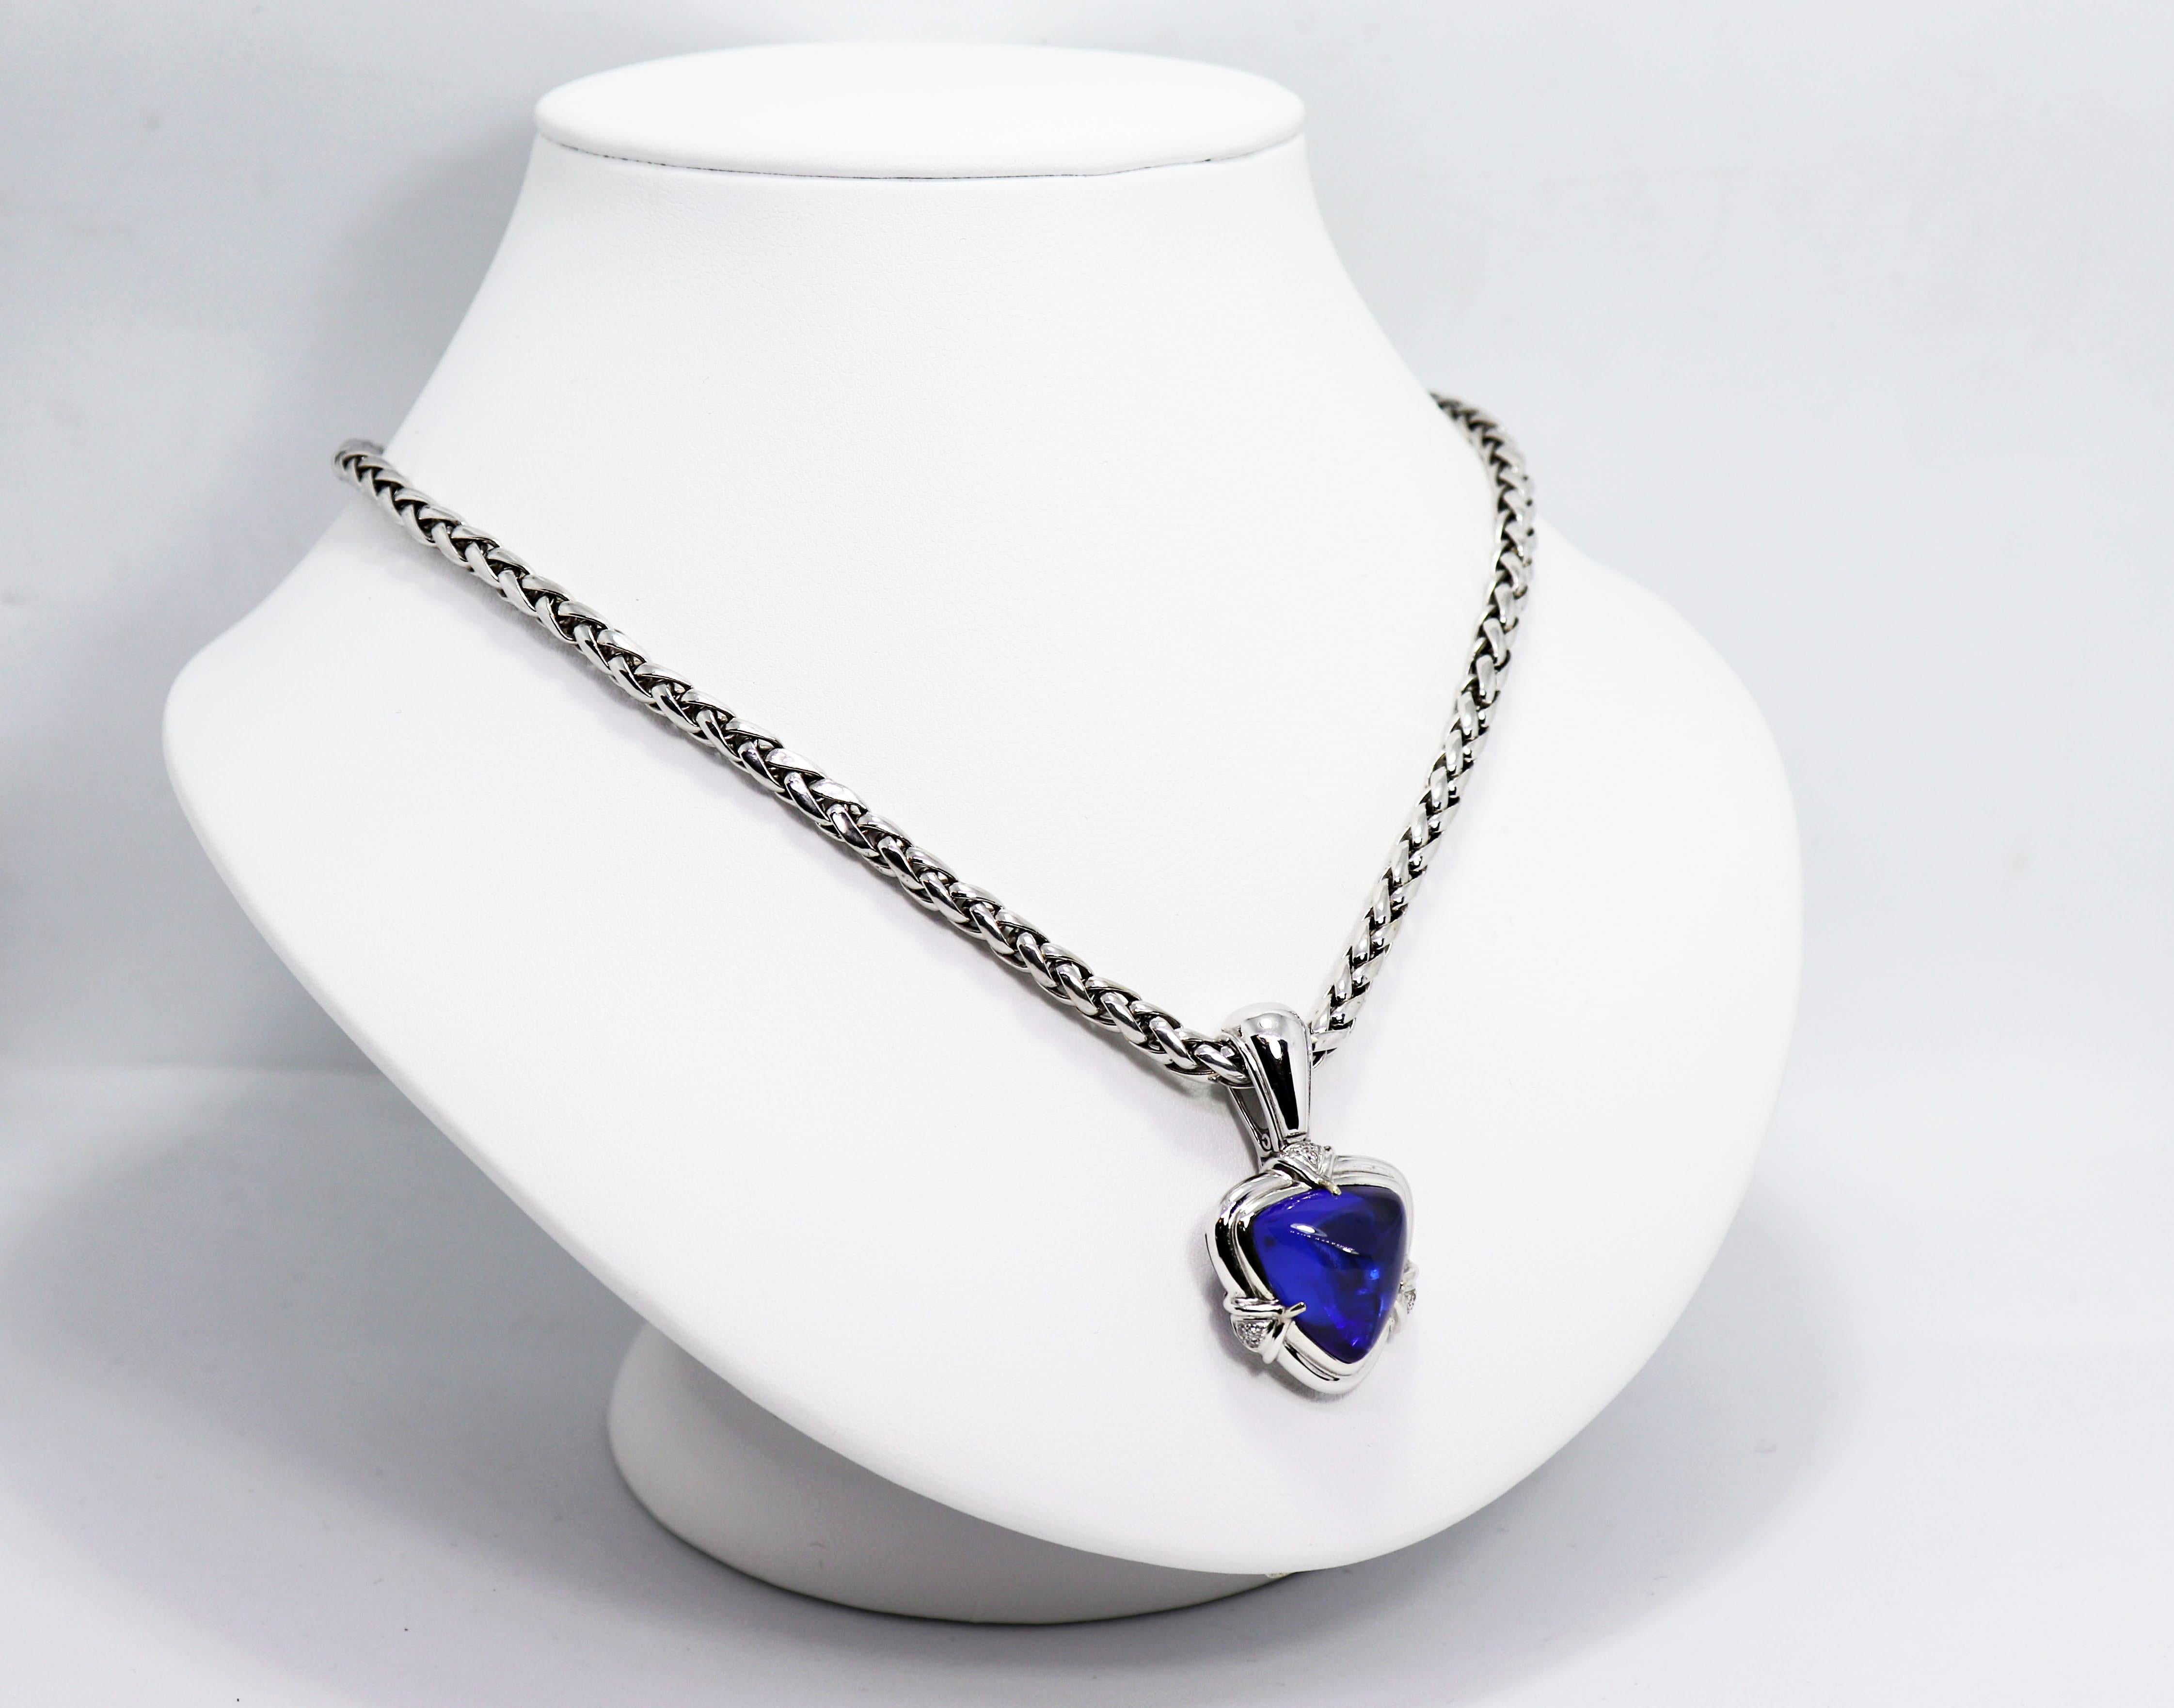 Magnifique collier mettant en vedette une tanzanite cabochon bleu vif rare de catégorie AAA+ en forme de trillion pesant un poids impressionnant de 15.05 carats dans une monture ouverte à l'arrière. La monture est en outre pavée de neuf diamants